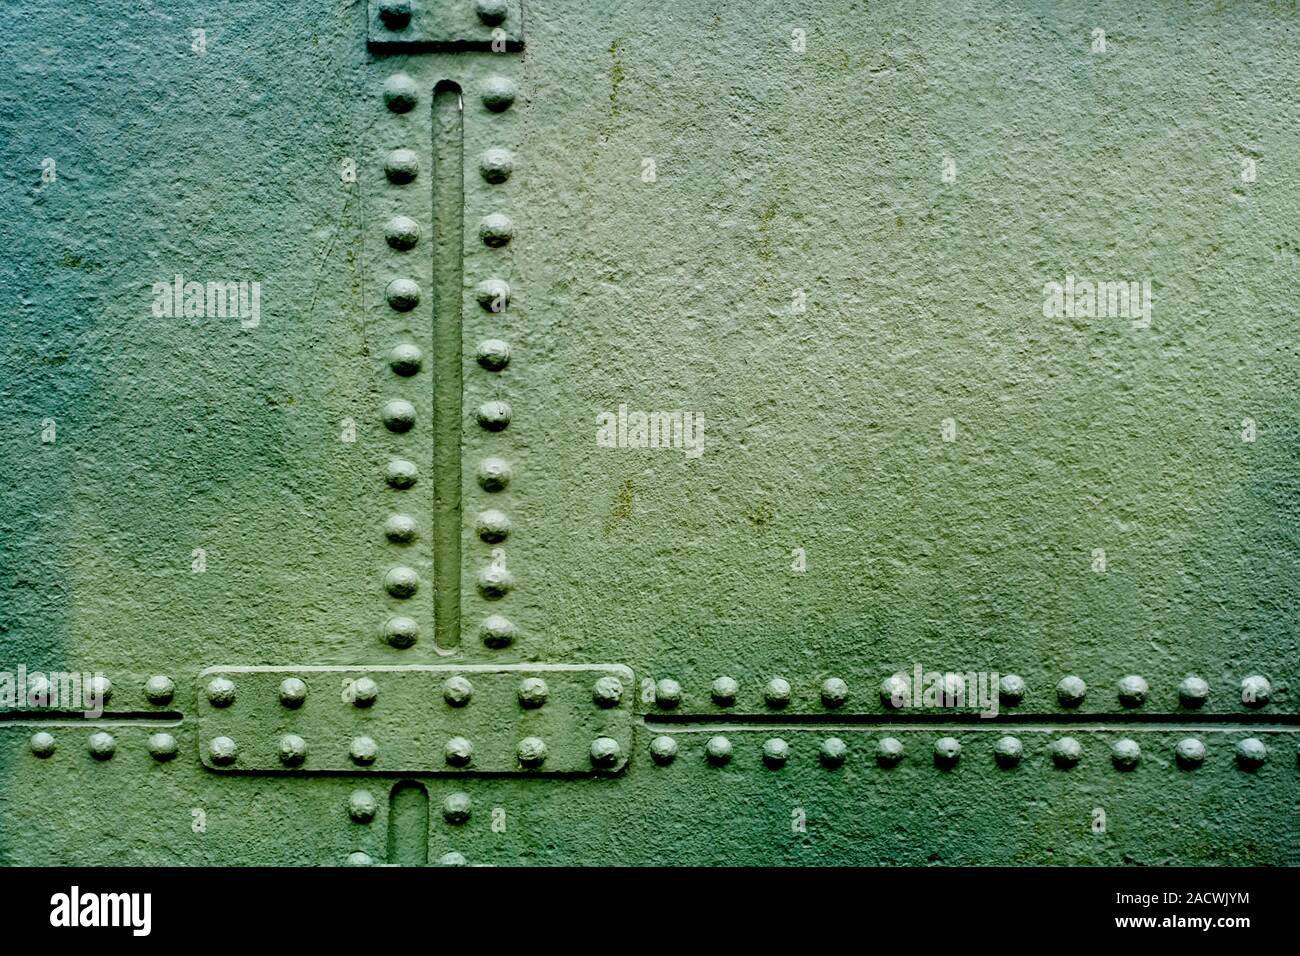 Metallplatte Oder Schild Mit Nieten über Gitter Stockbild - Bild von  element, schmutz: 53996829